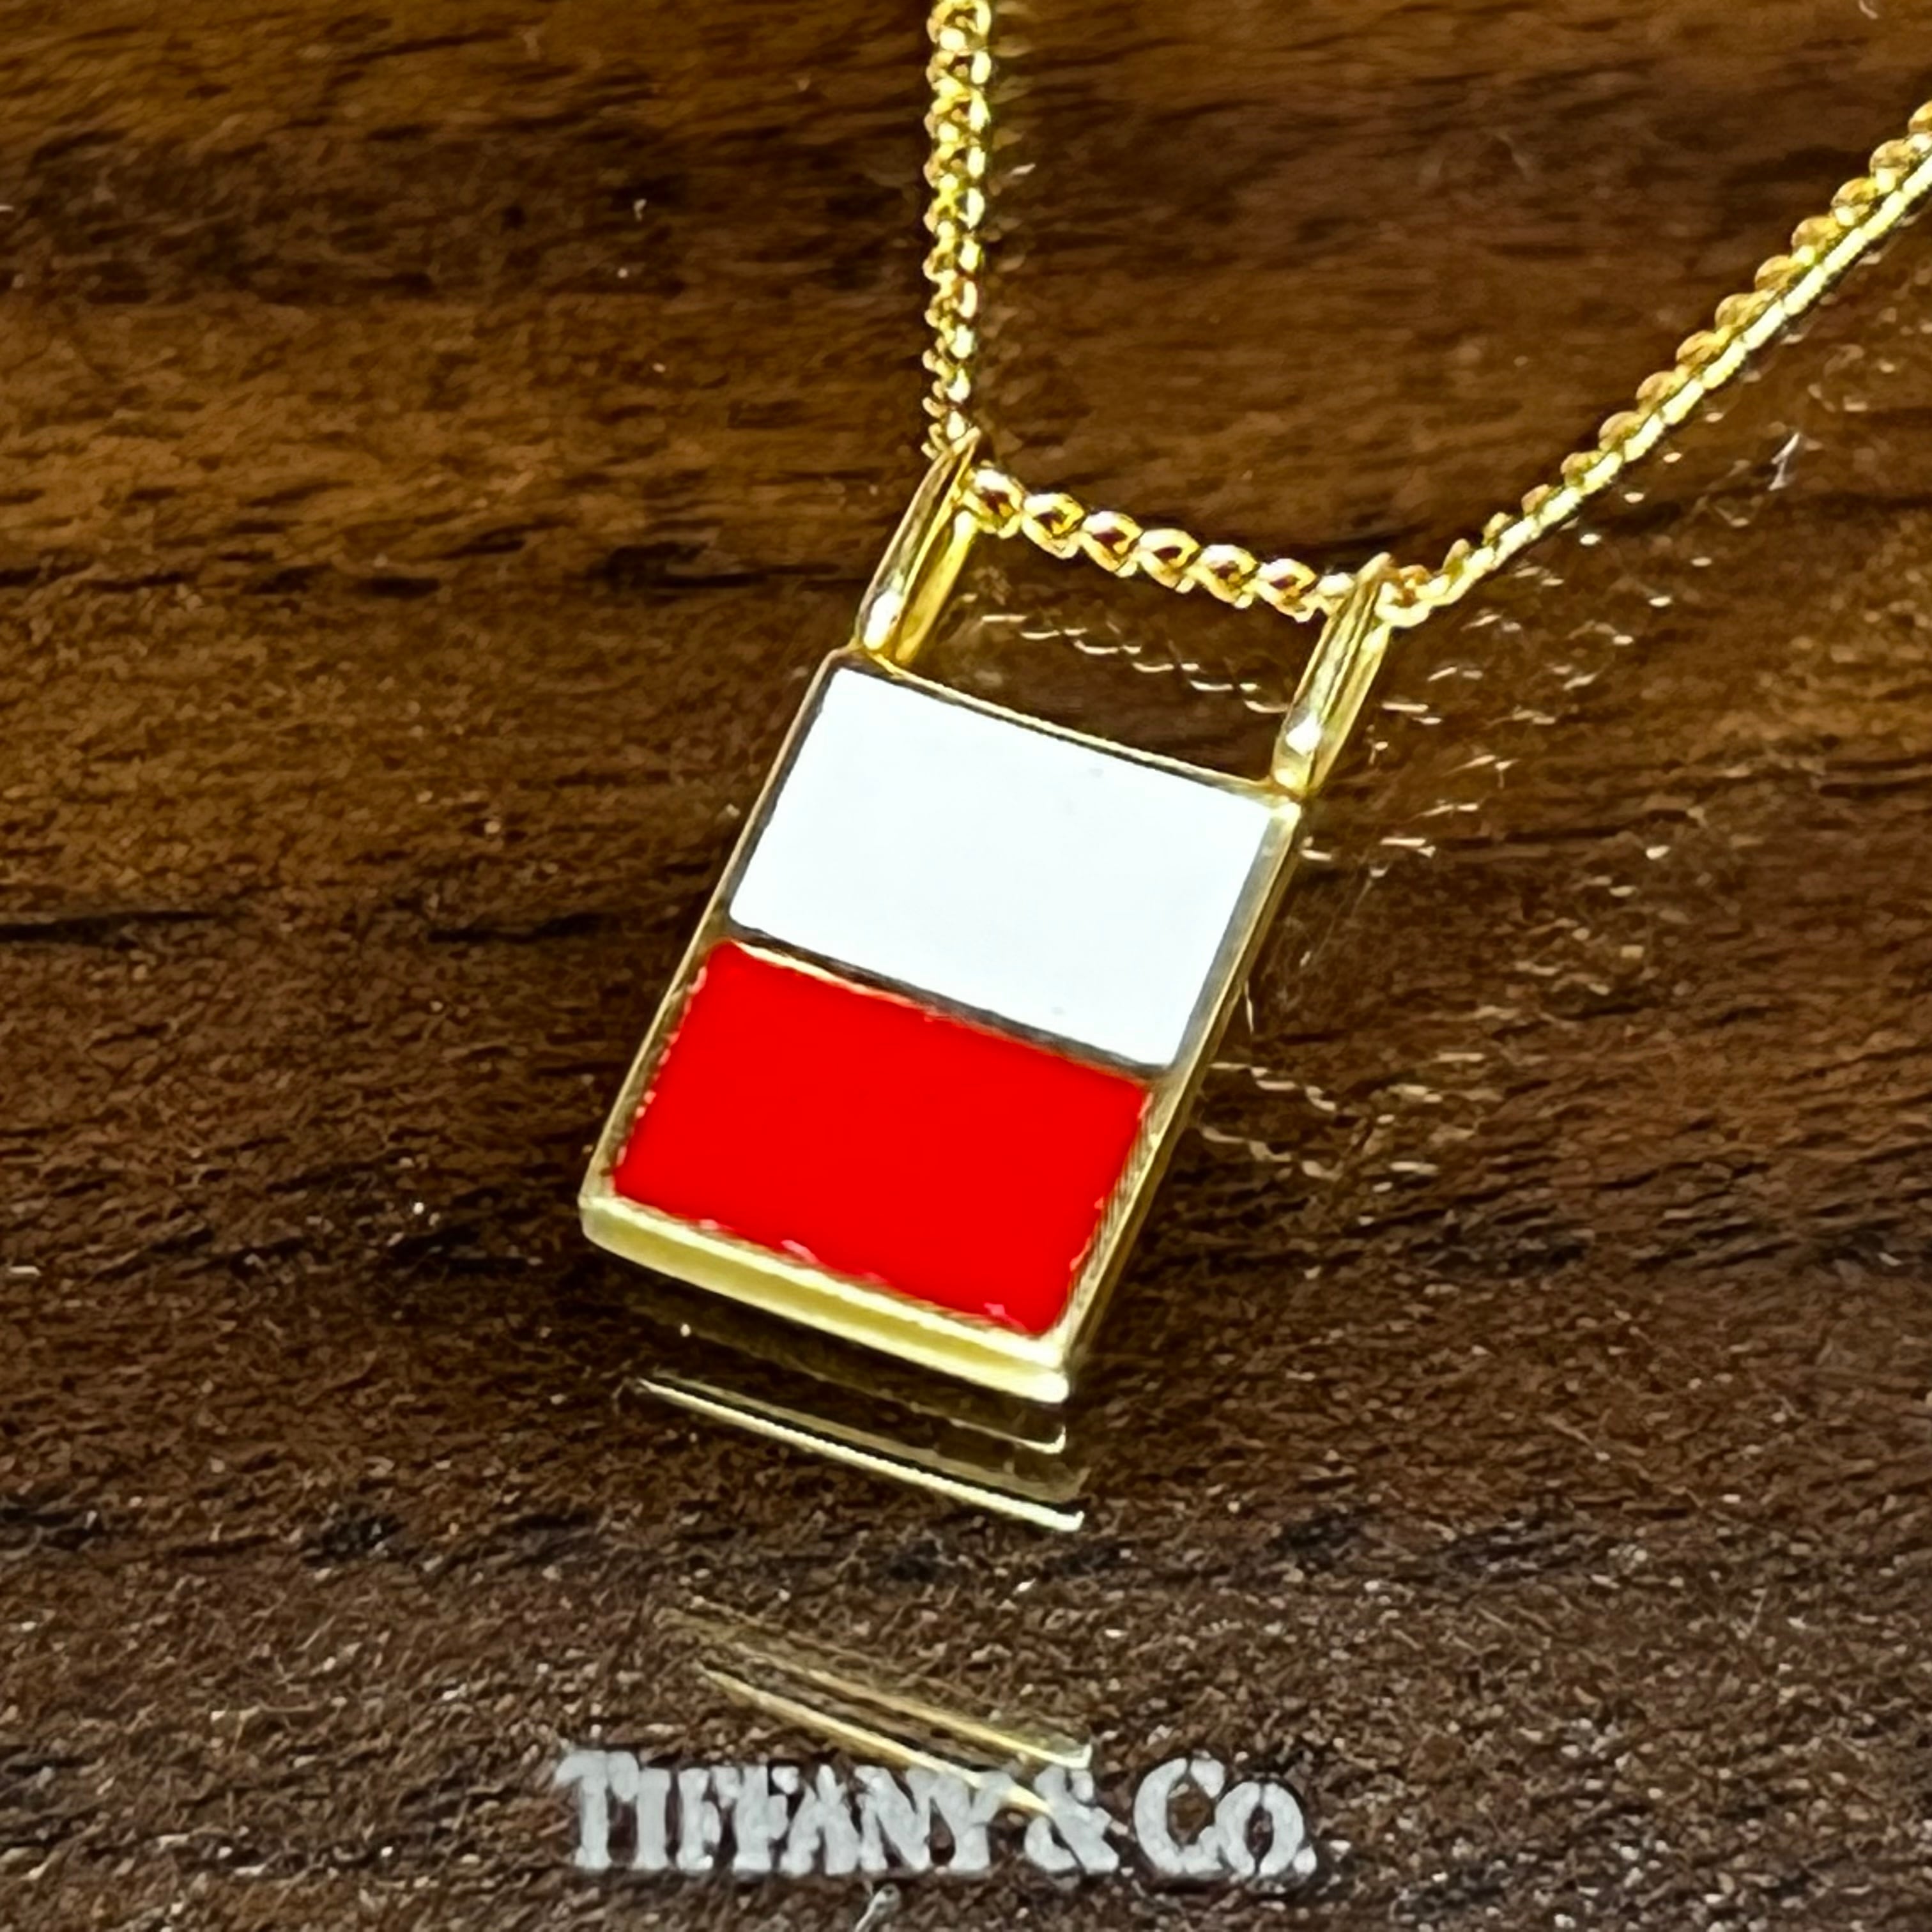 ネックレスティファニー ネックレス Tiffany necklace pendant